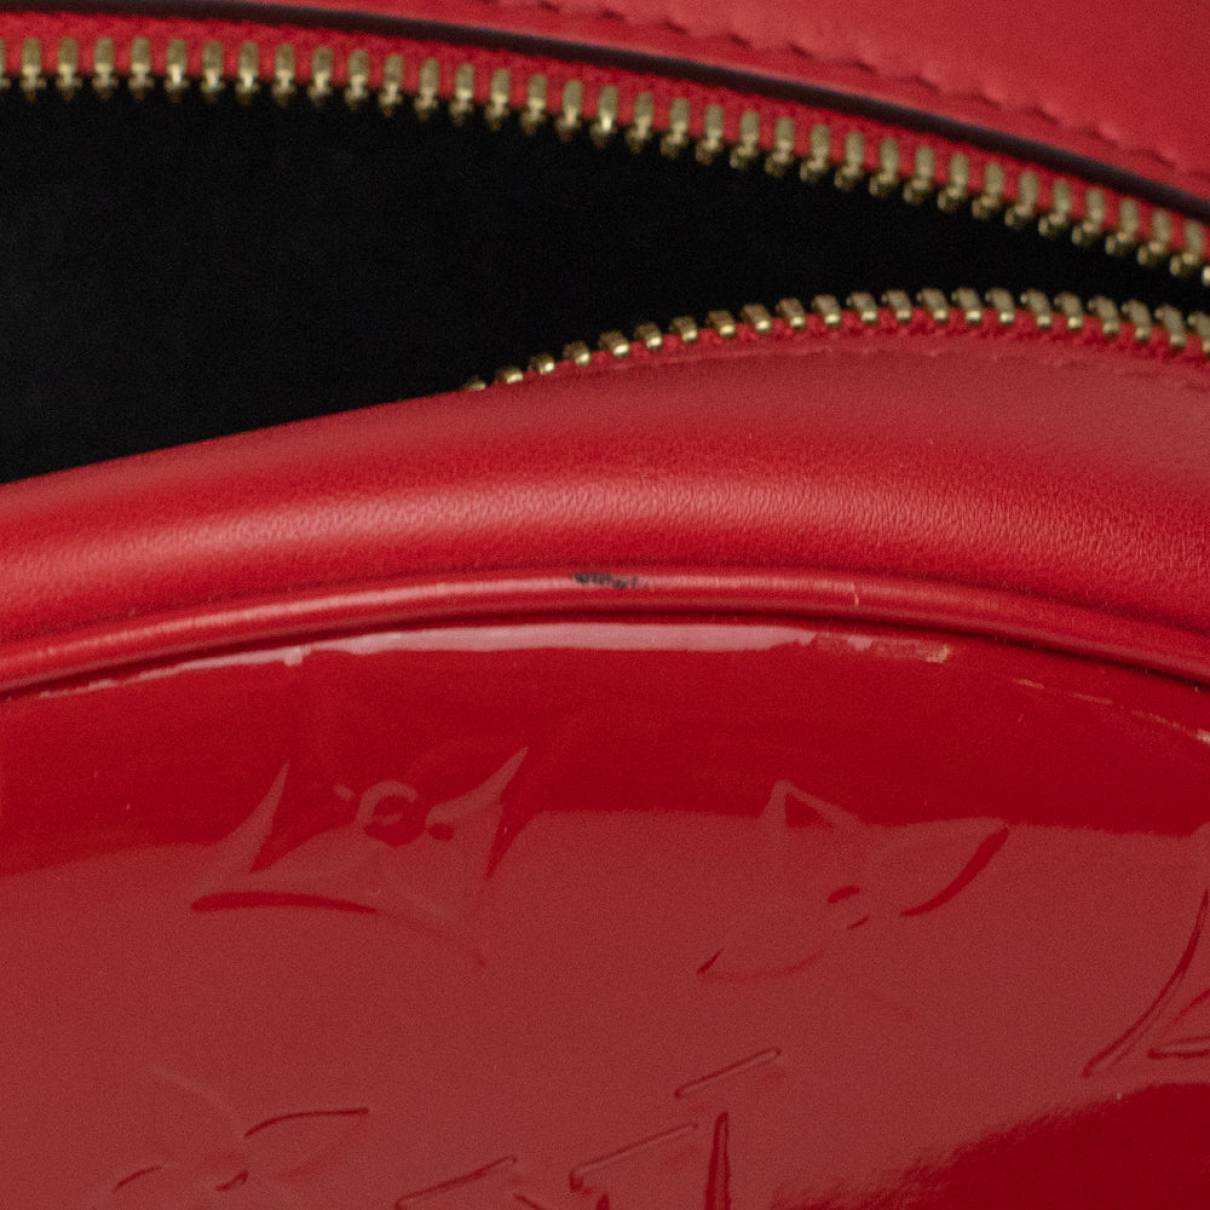 Louis Vuitton - Authenticated Petite Boîte Chapeau Handbag - Patent Leather Red Plain for Women, Very Good Condition